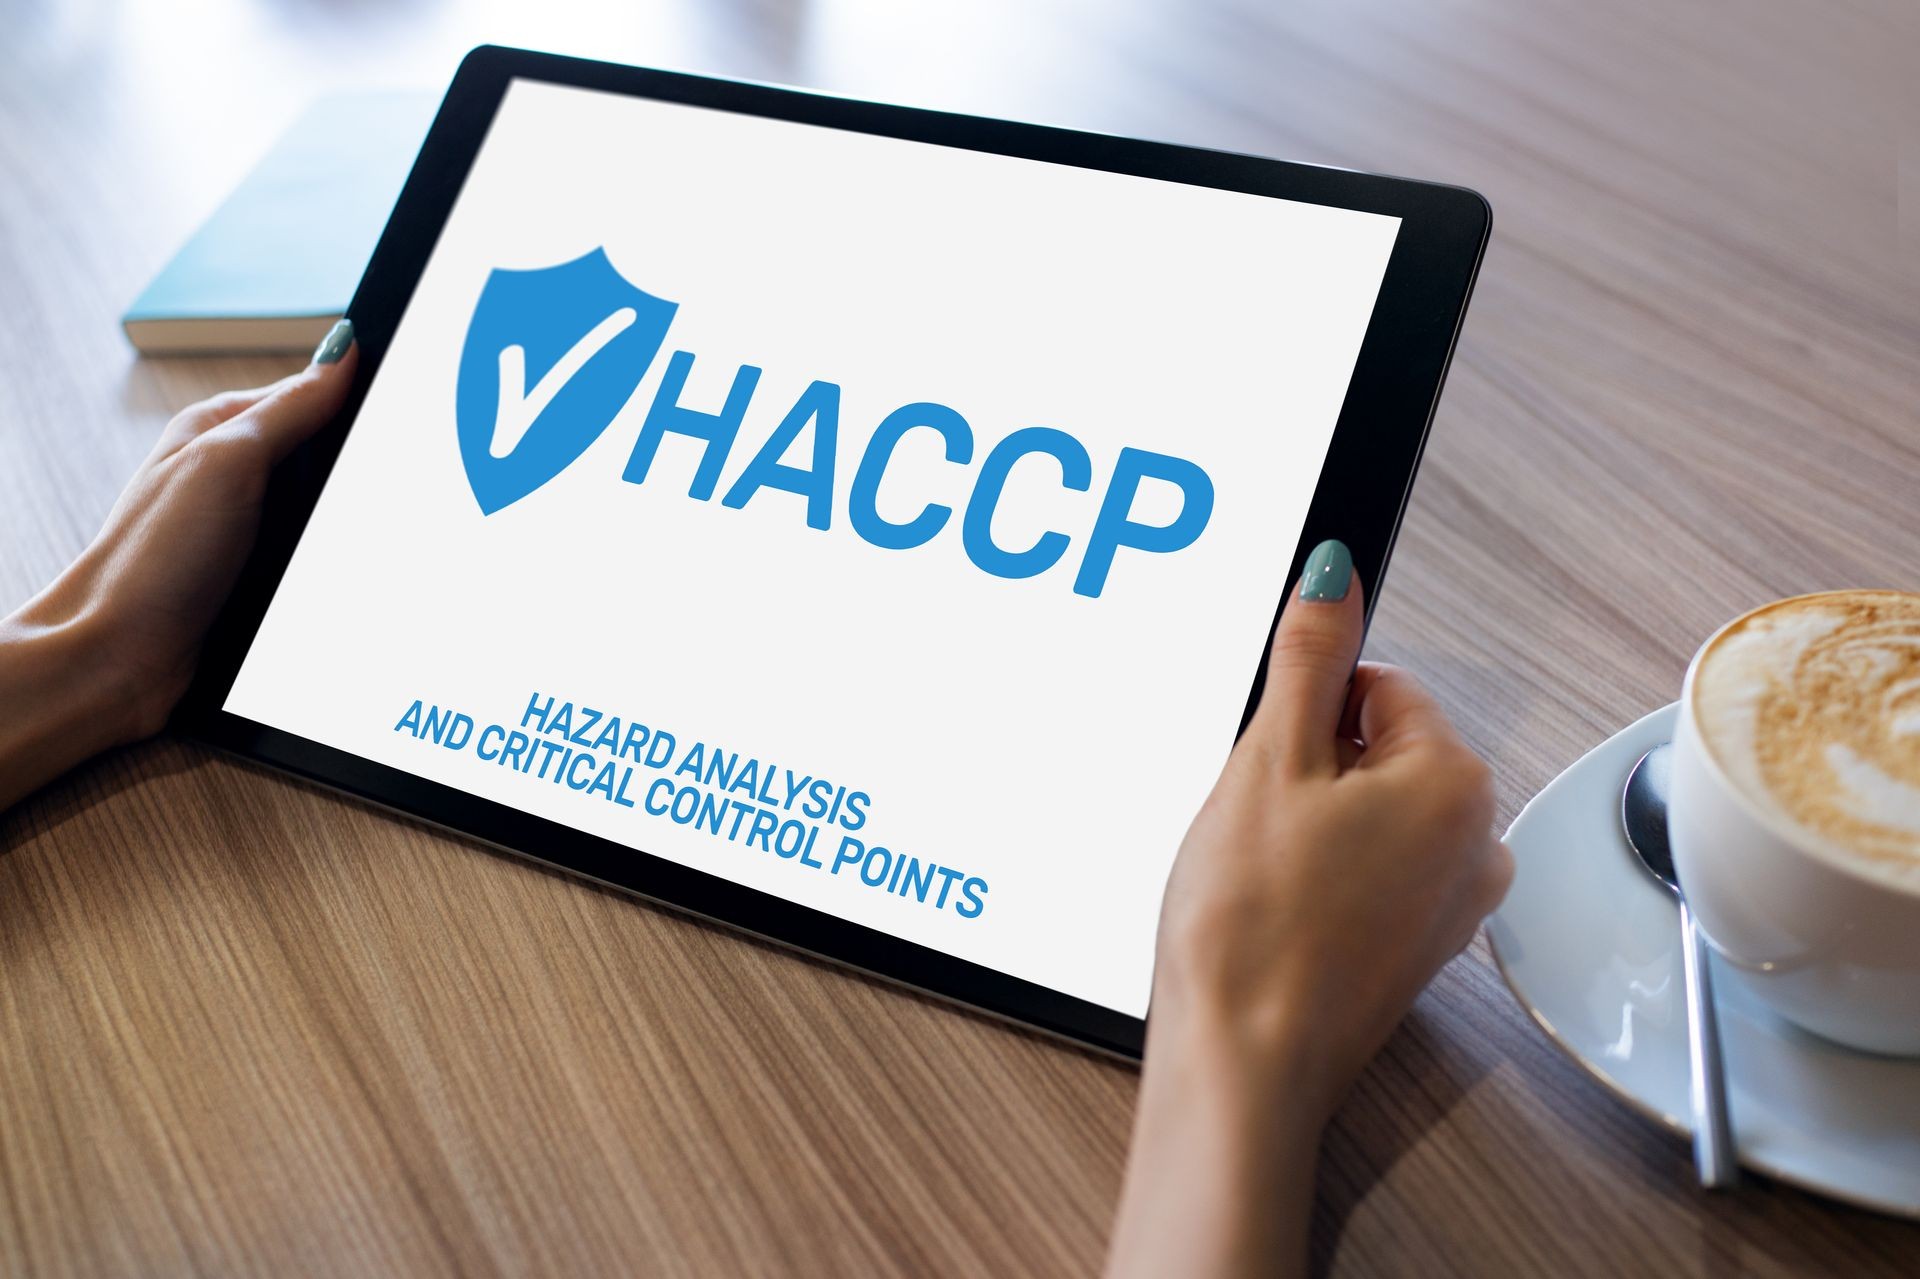 HACCP-Konzept